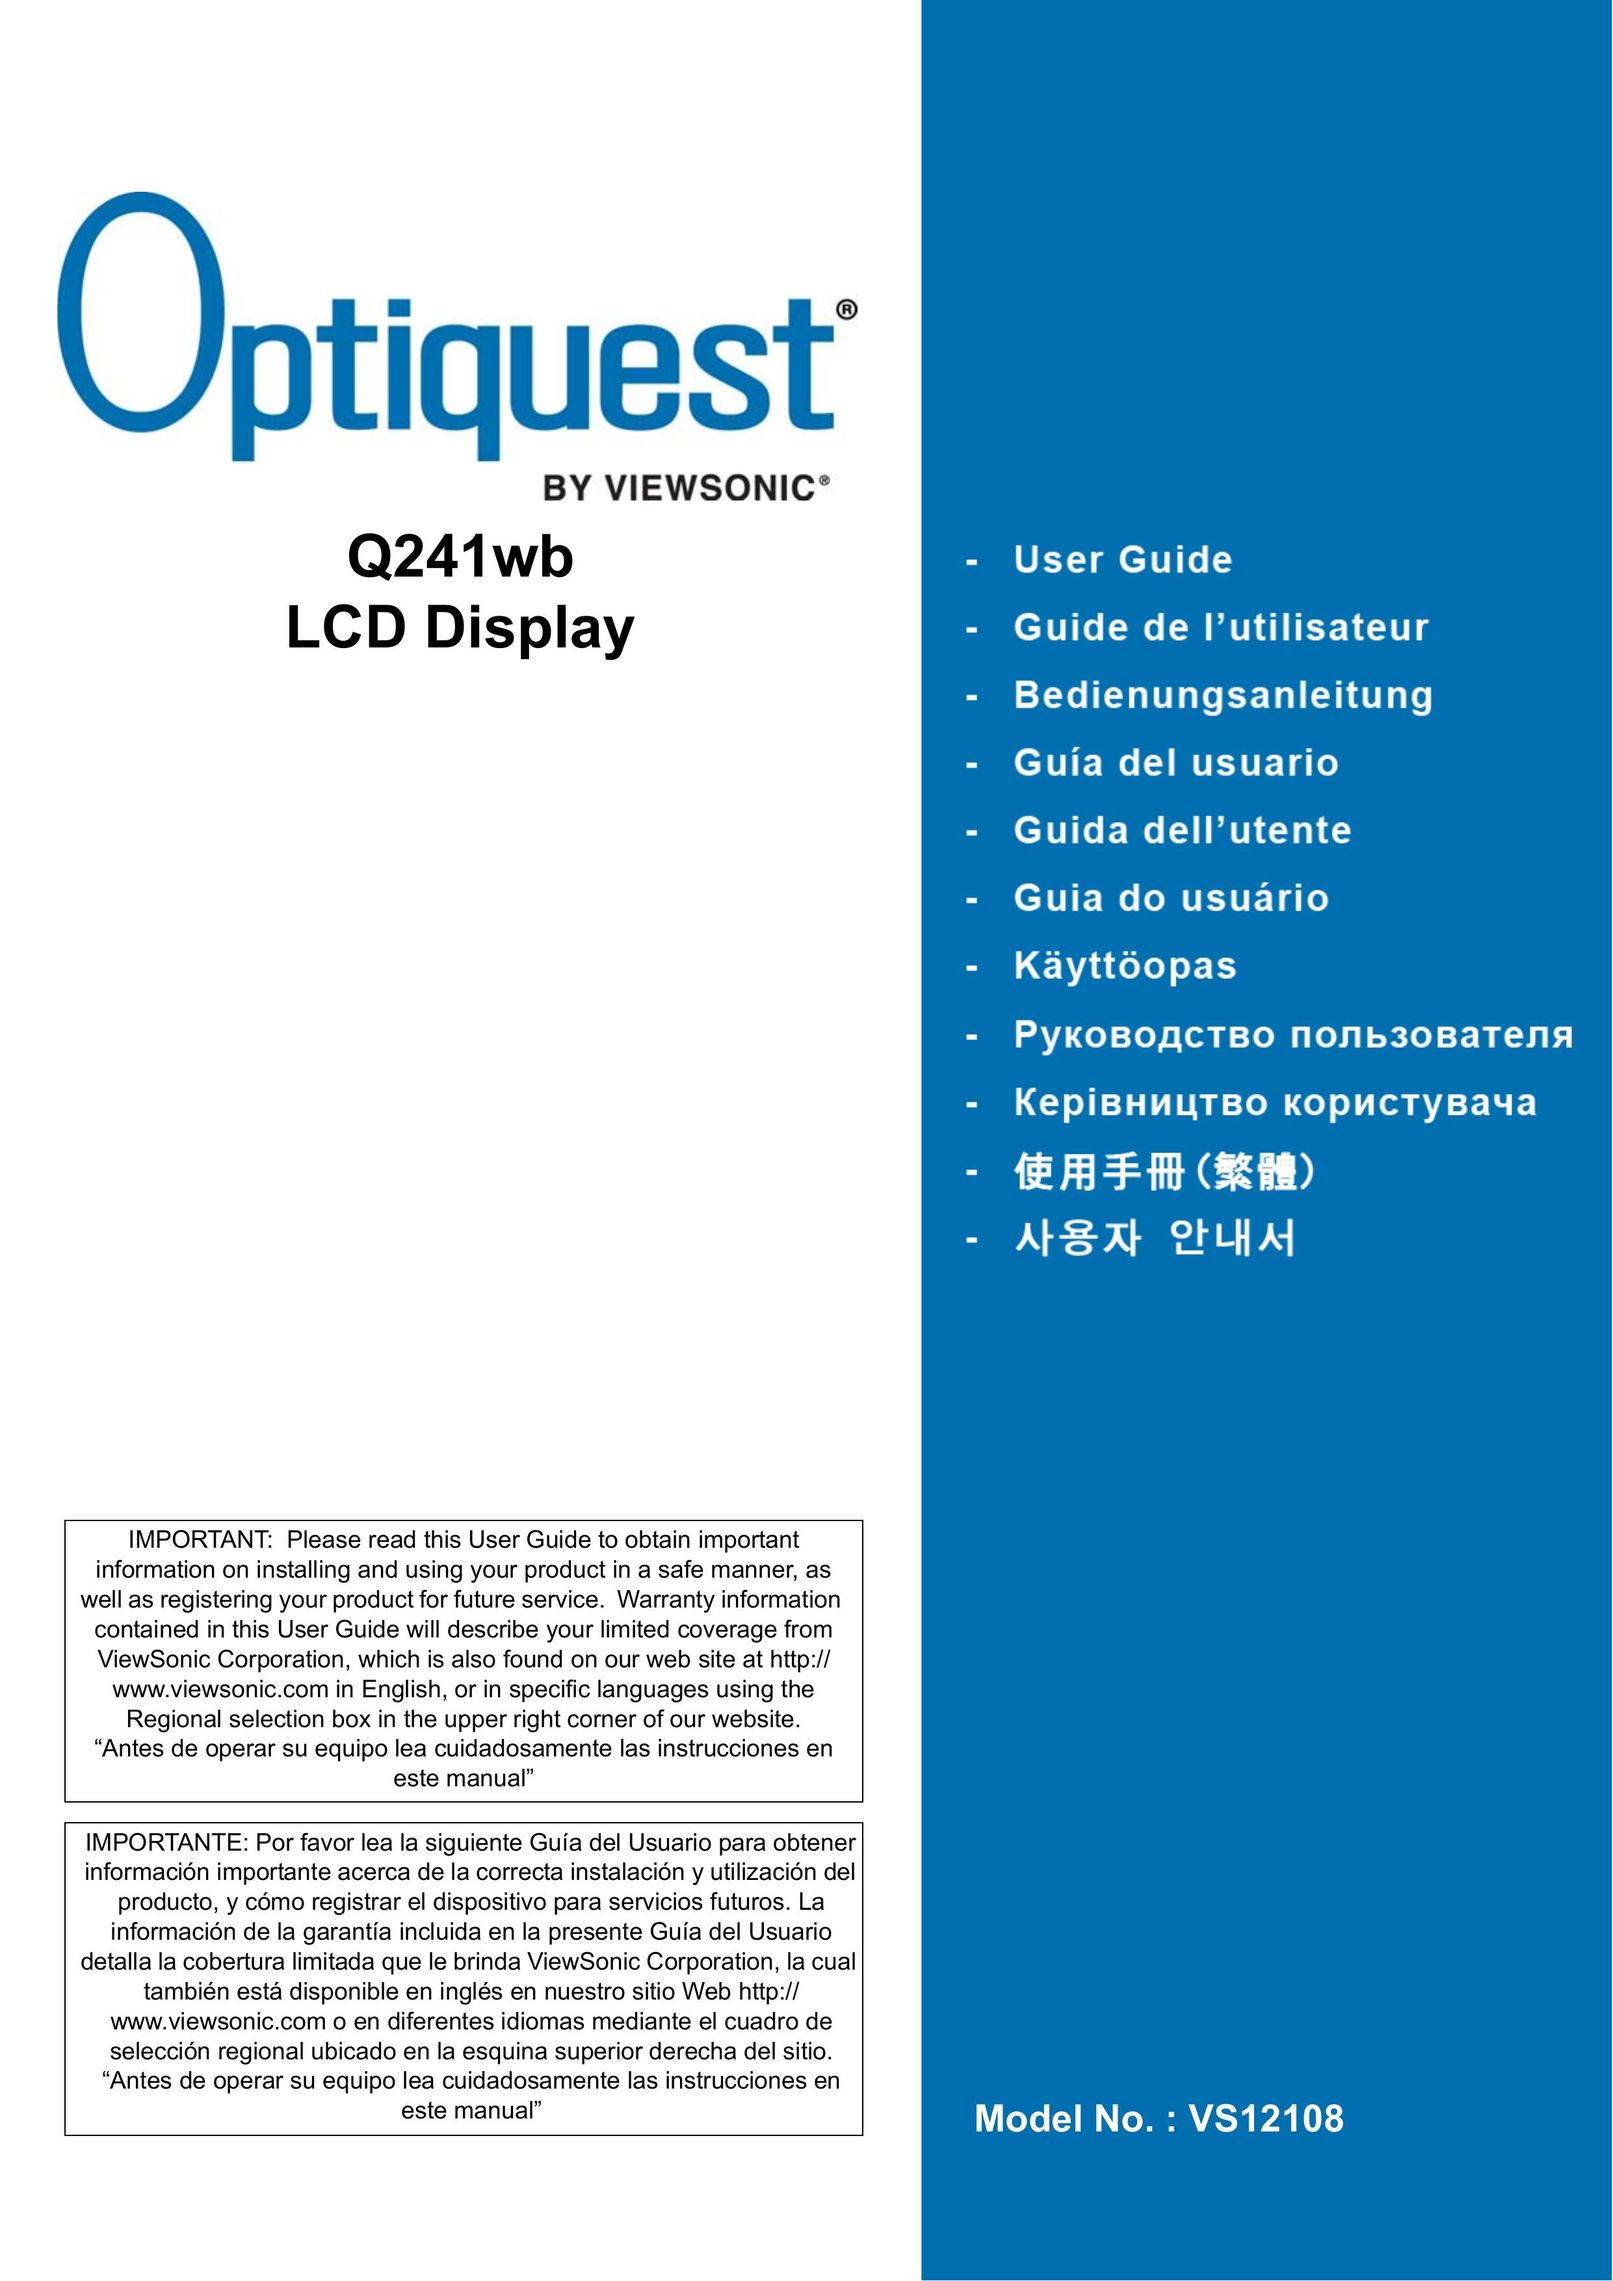 Optiquest VS12108 Computer Monitor User Manual